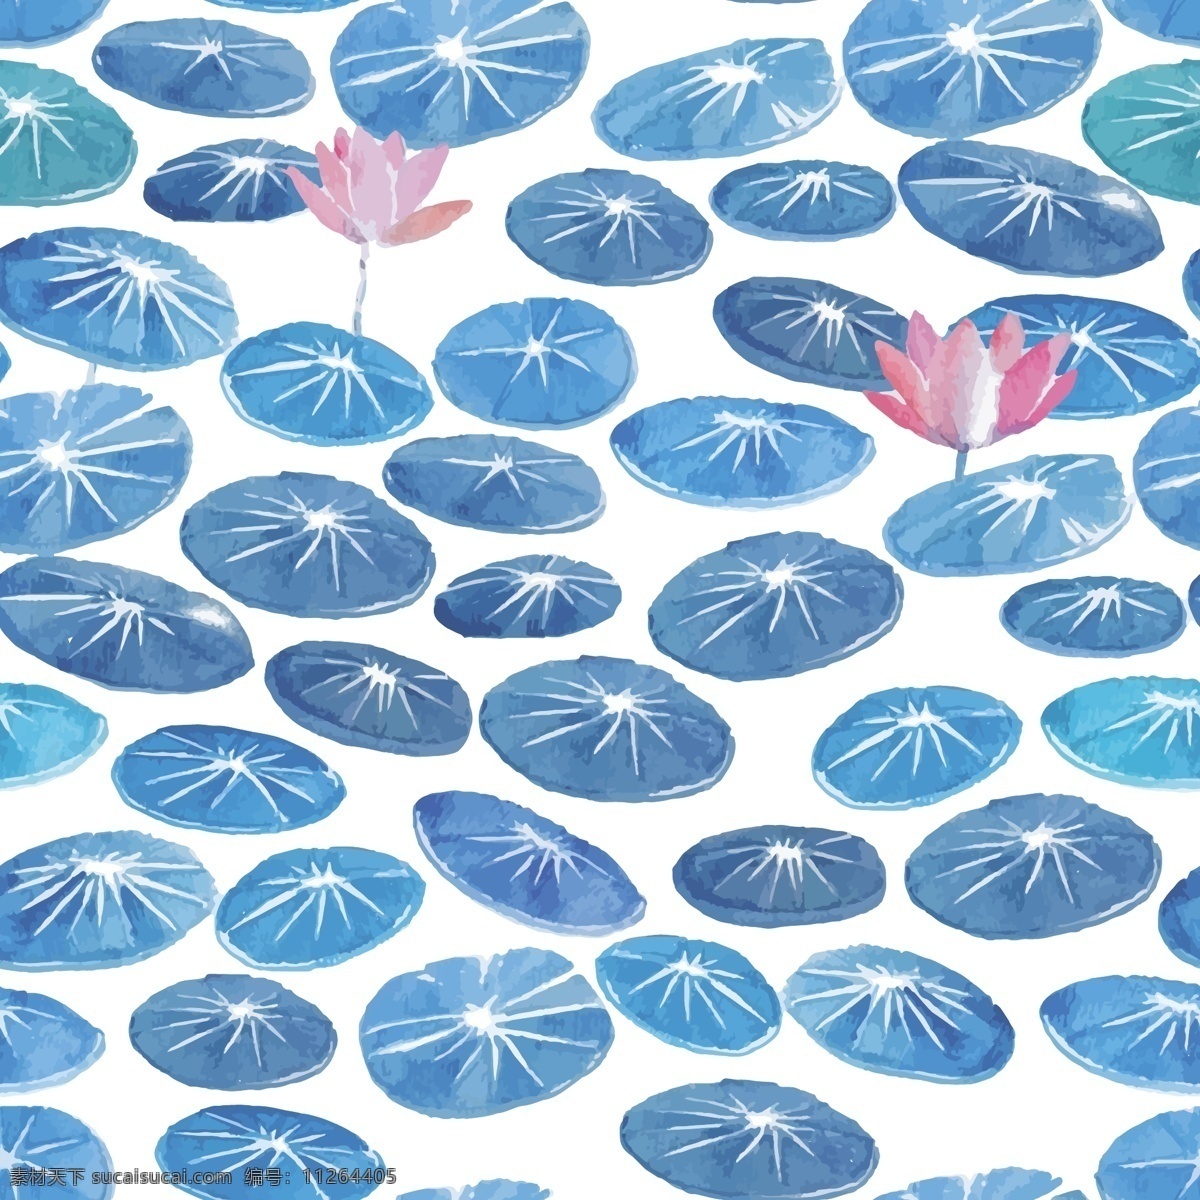 荷叶 海水 背景 图 矢量 设计素材 蓝色 荷花 粉色 水彩 夏天 夏日 插画 小清新 纹理